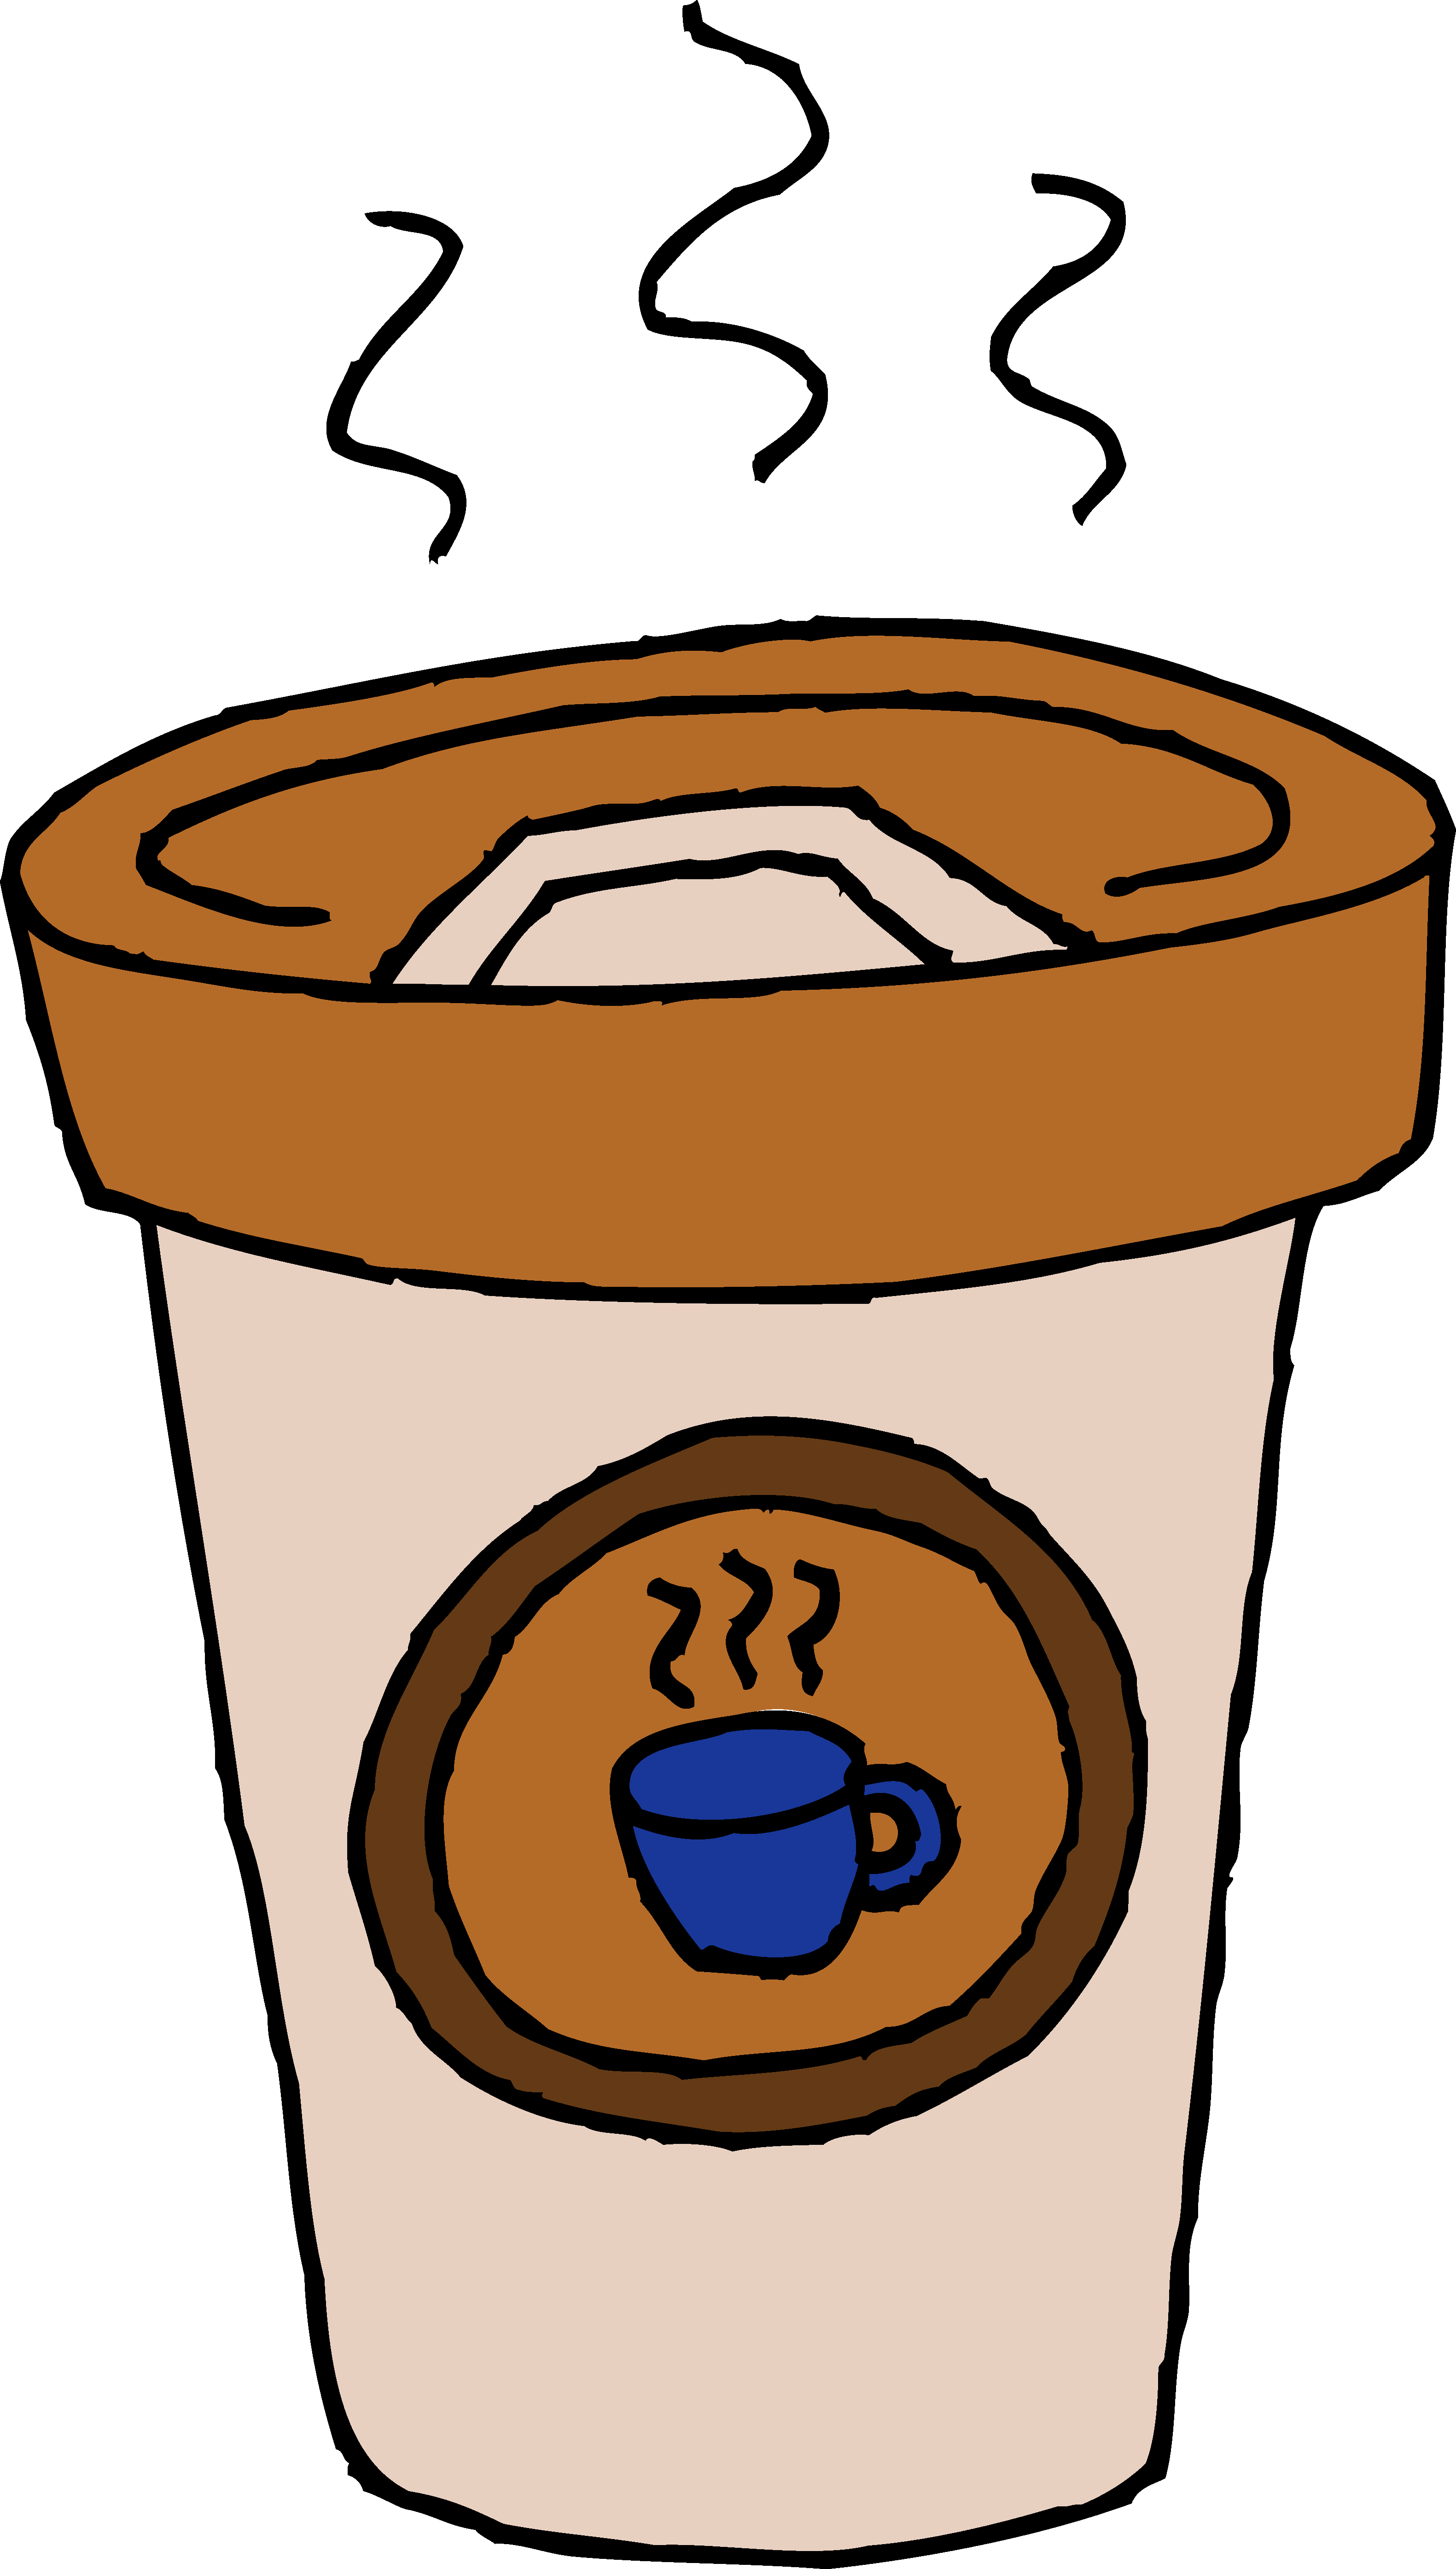 Images For > Cafe Logo Clip Art